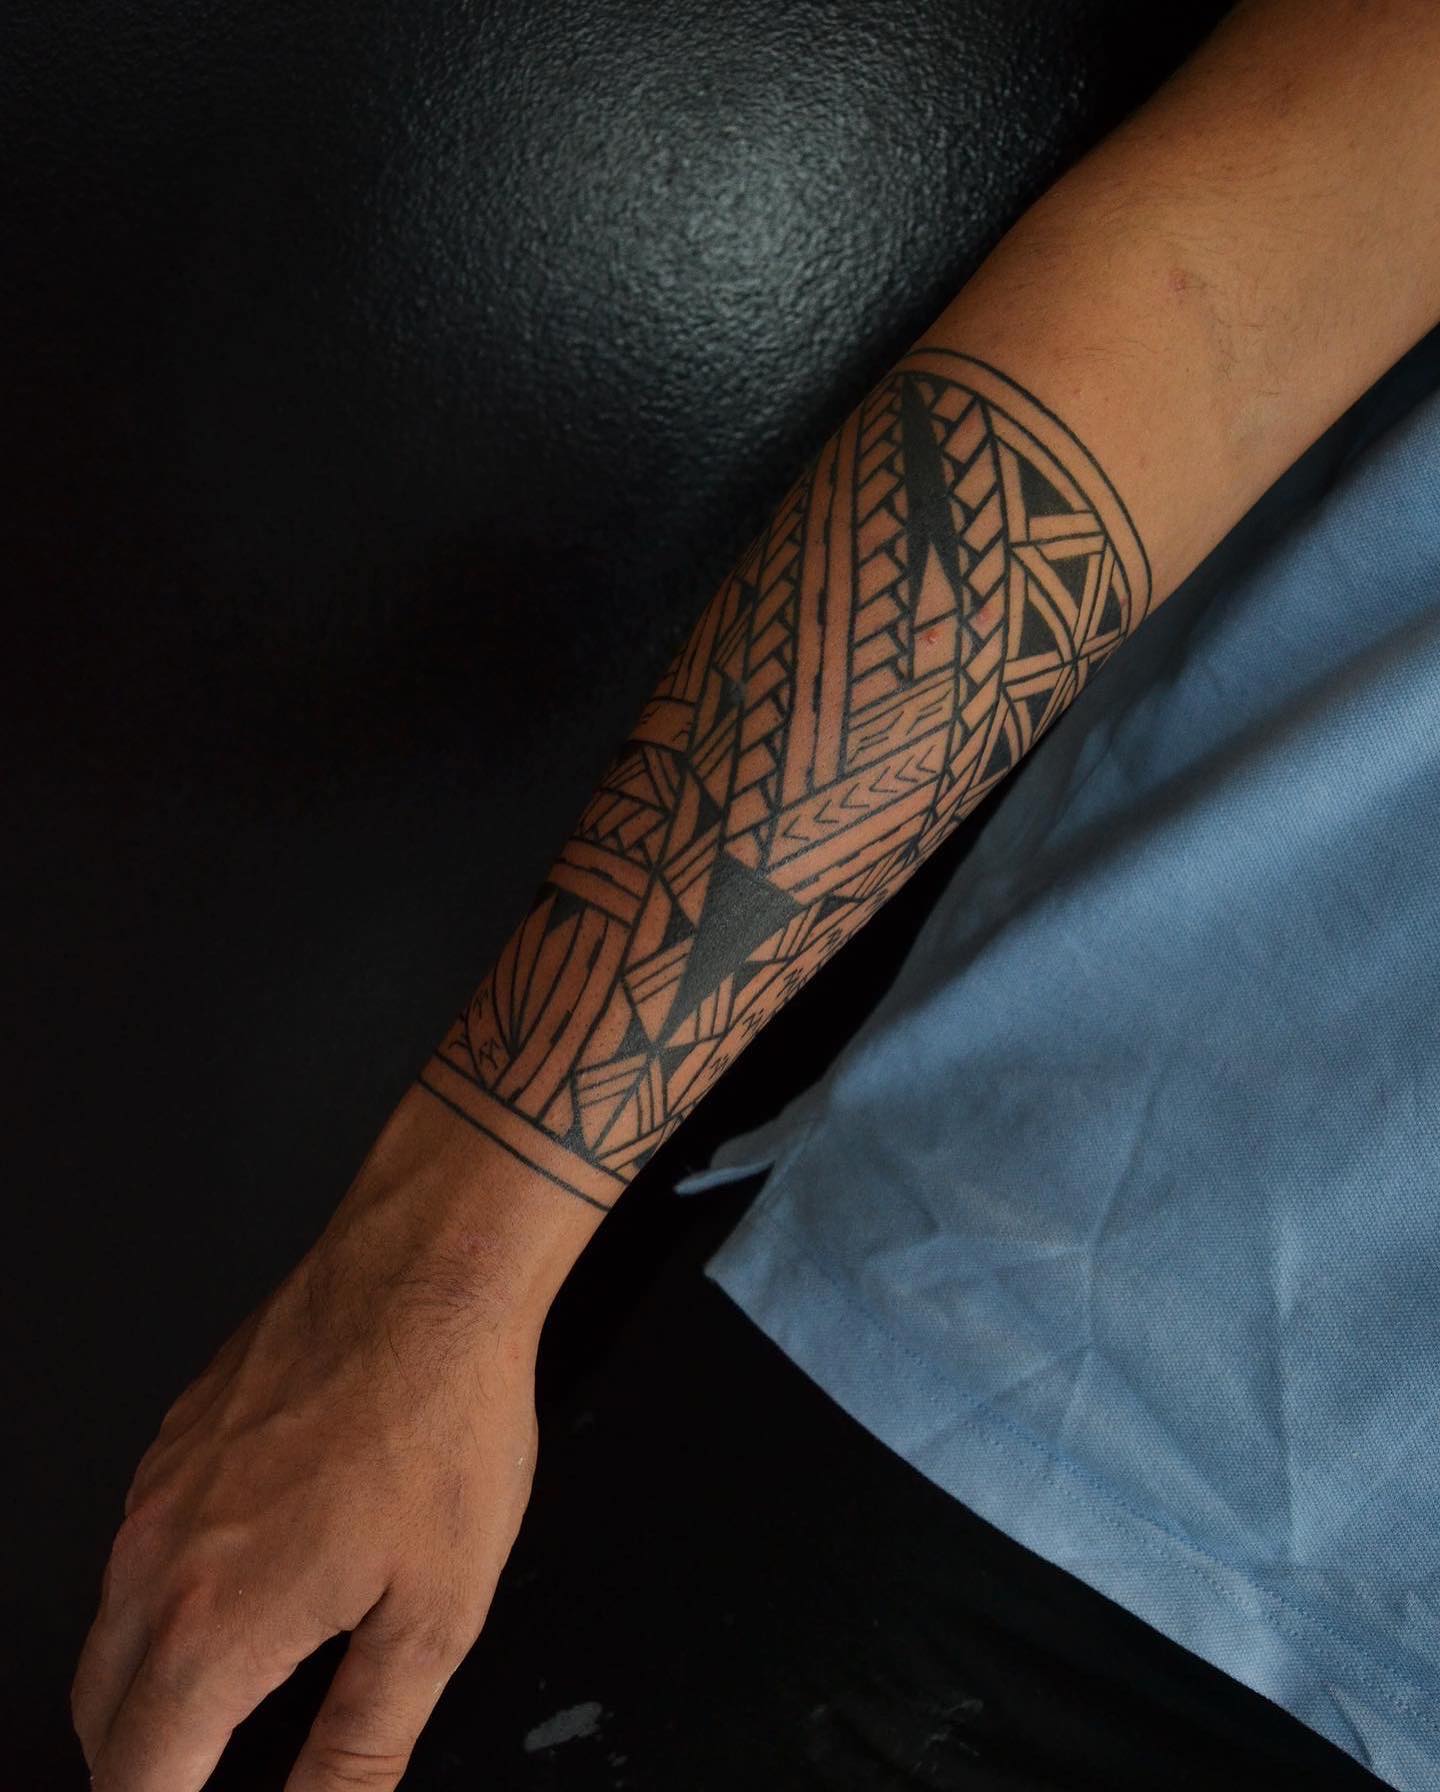 Tatuaje negro sobre el brazo.